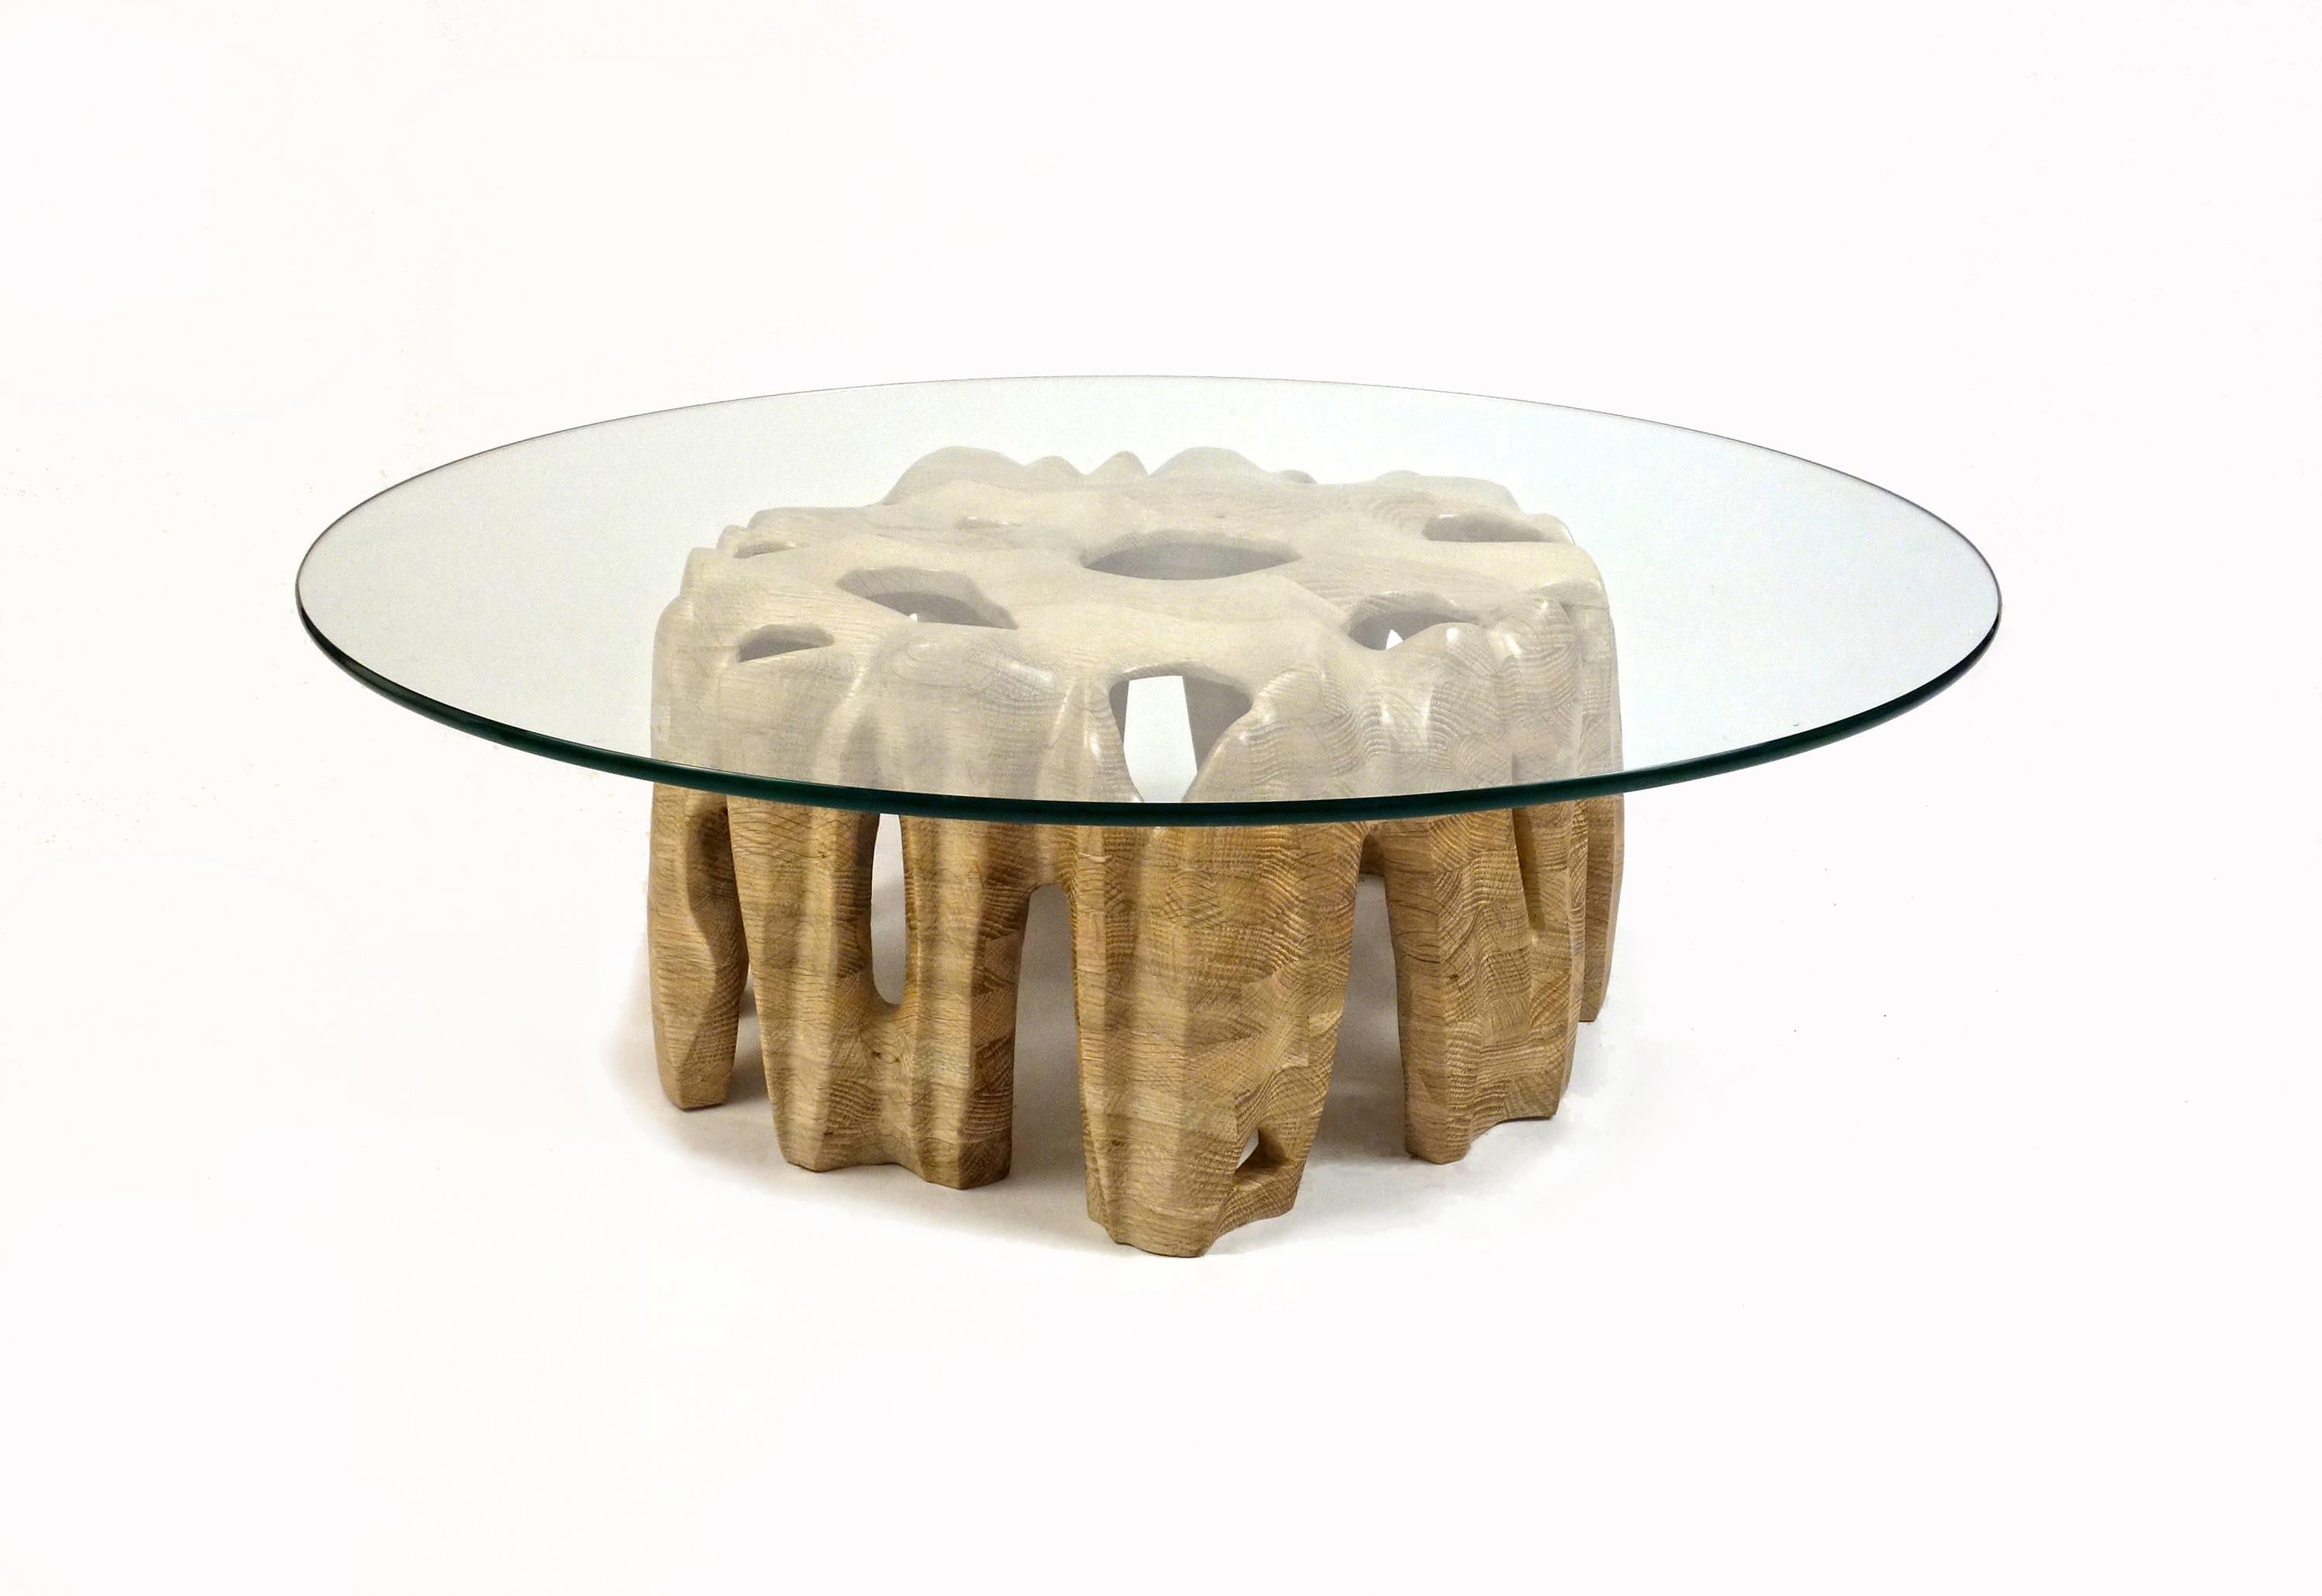 Table basse Erode d'Aaron Scott
Dimensions : Ø 91,5 x H 30,5 cm
MATERIAL : Chêne blanc et verre.

Table basse en bois massif, sculptée à la main, avec plateau en verre, dont la base en bois simule les flancs érodés d'une montagne. 

Pour